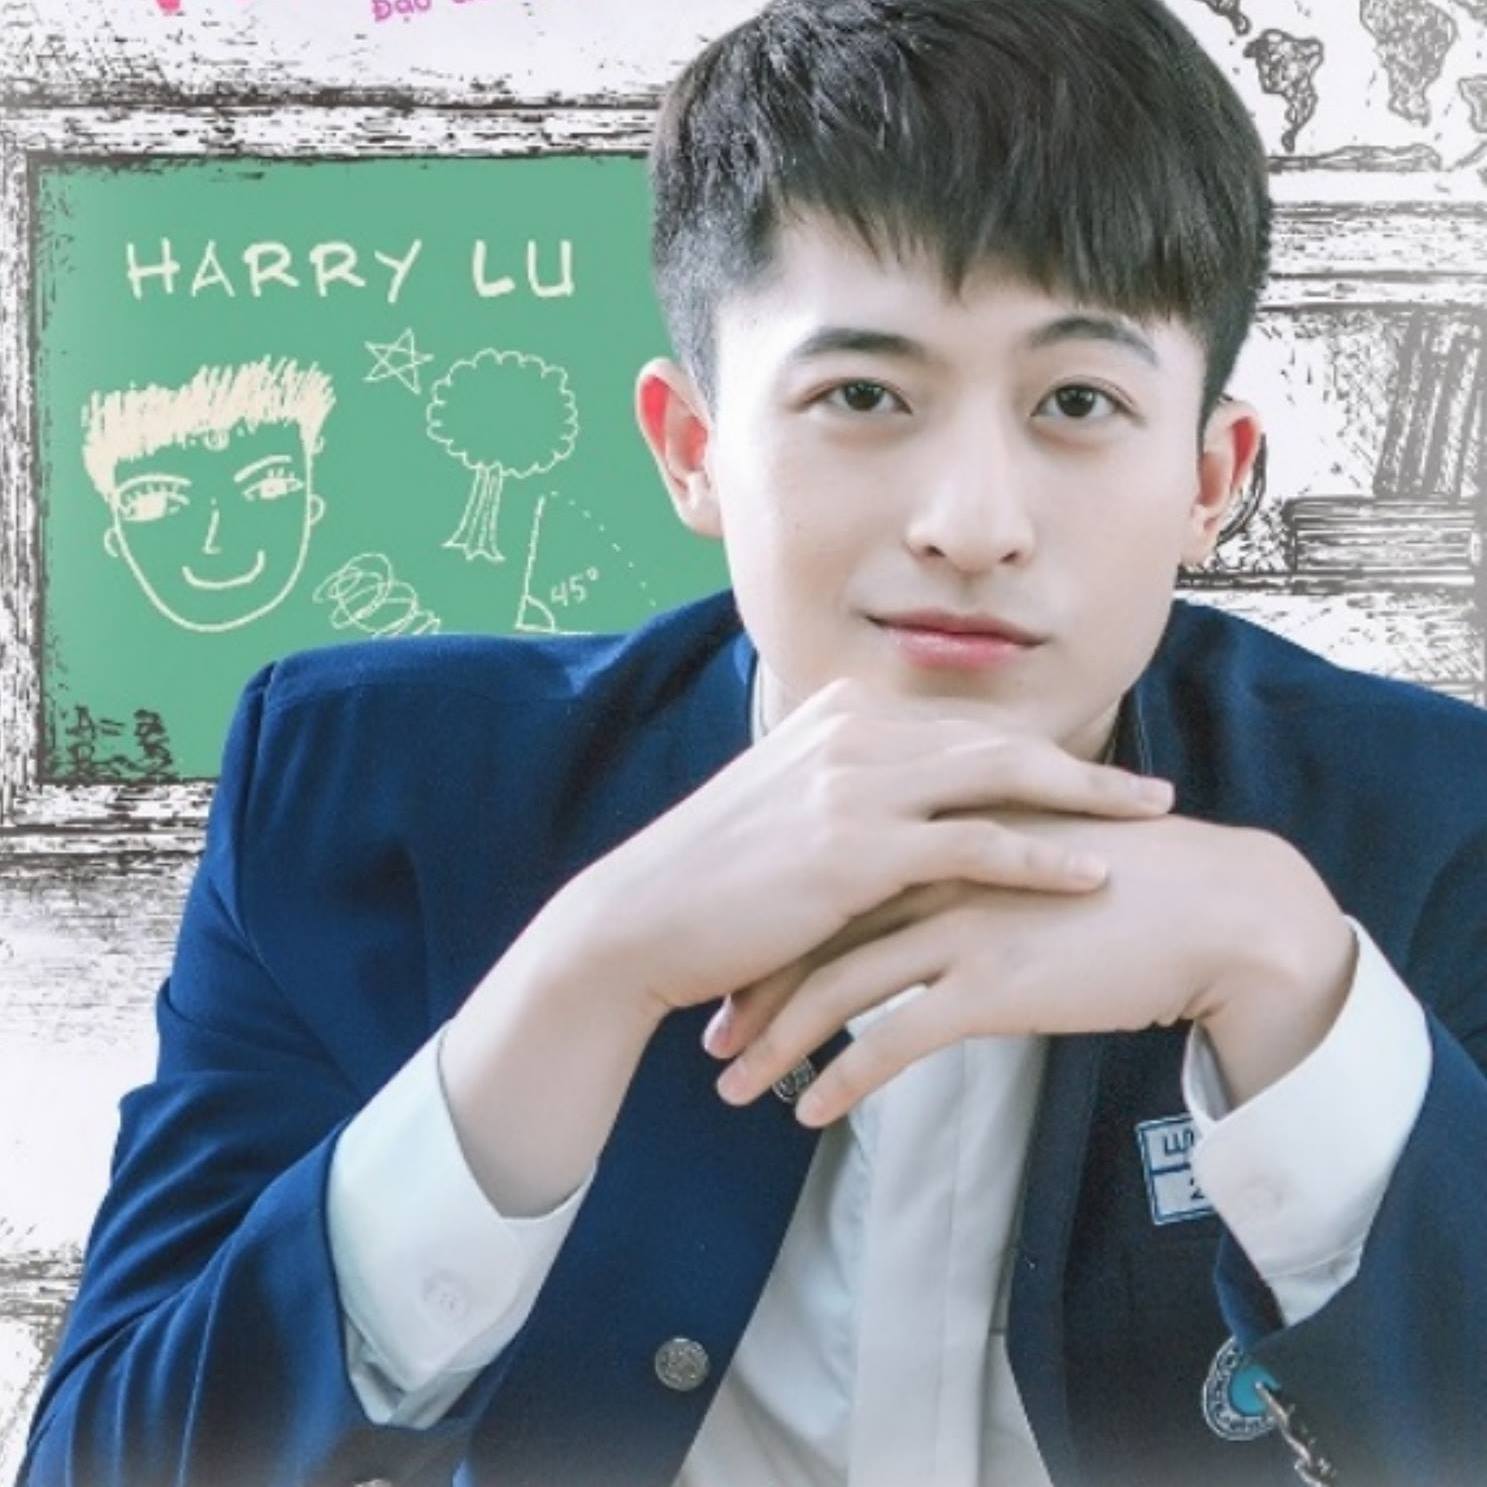 Lu Jinyu (呂晉宇), putra penduduk baru, mencapai hasil yang baik di industri hiburan Vietnam. Foto/ Facebook Harry Lu 